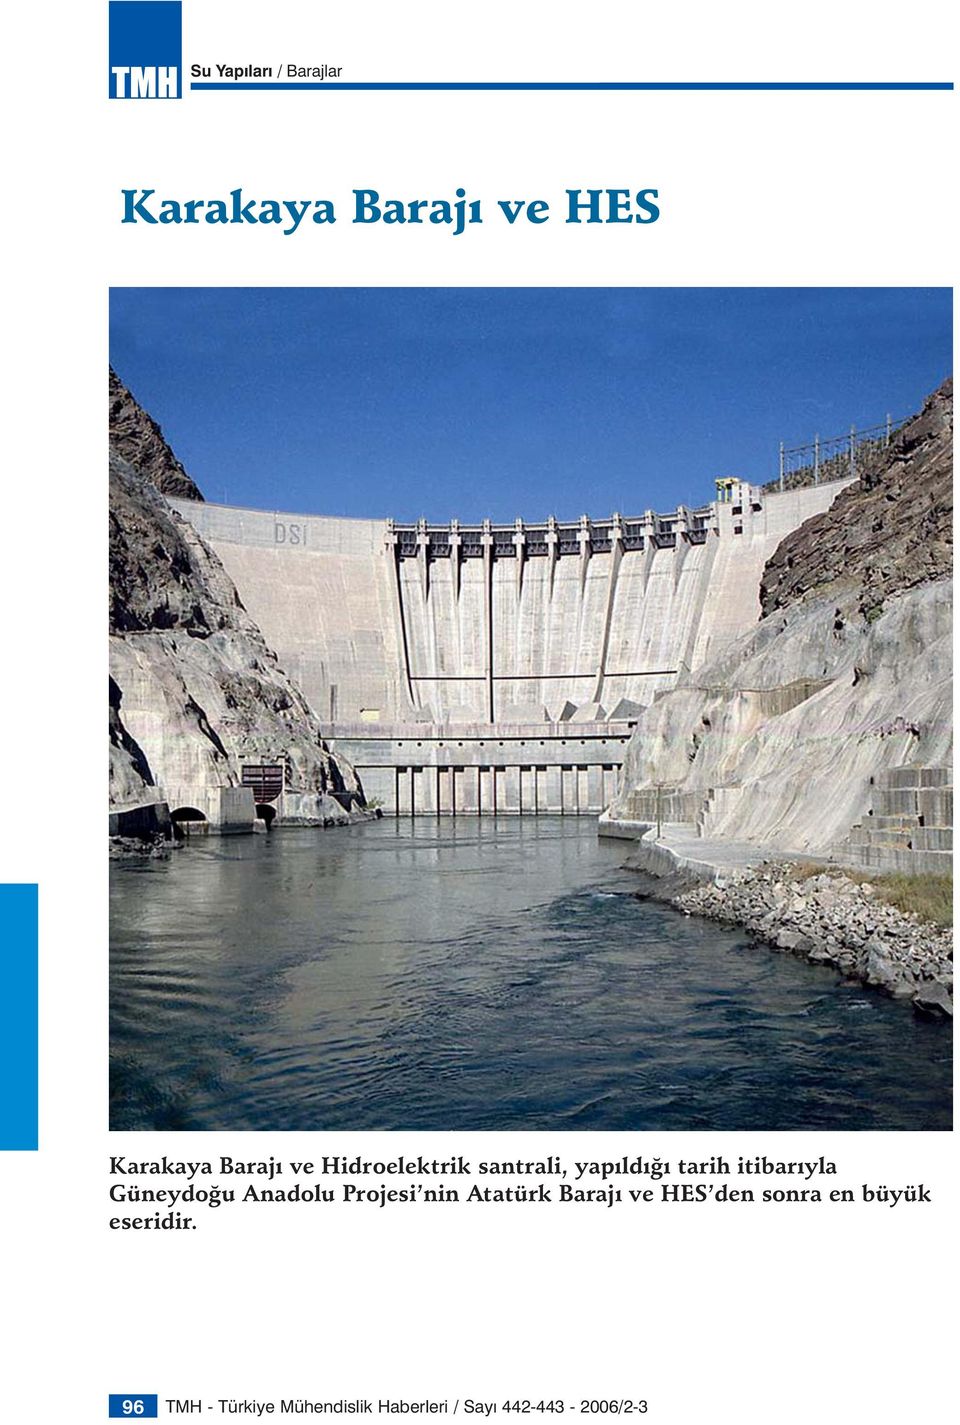 Anadolu Projesi nin Atatürk Barajı ve HES den sonra en büyük